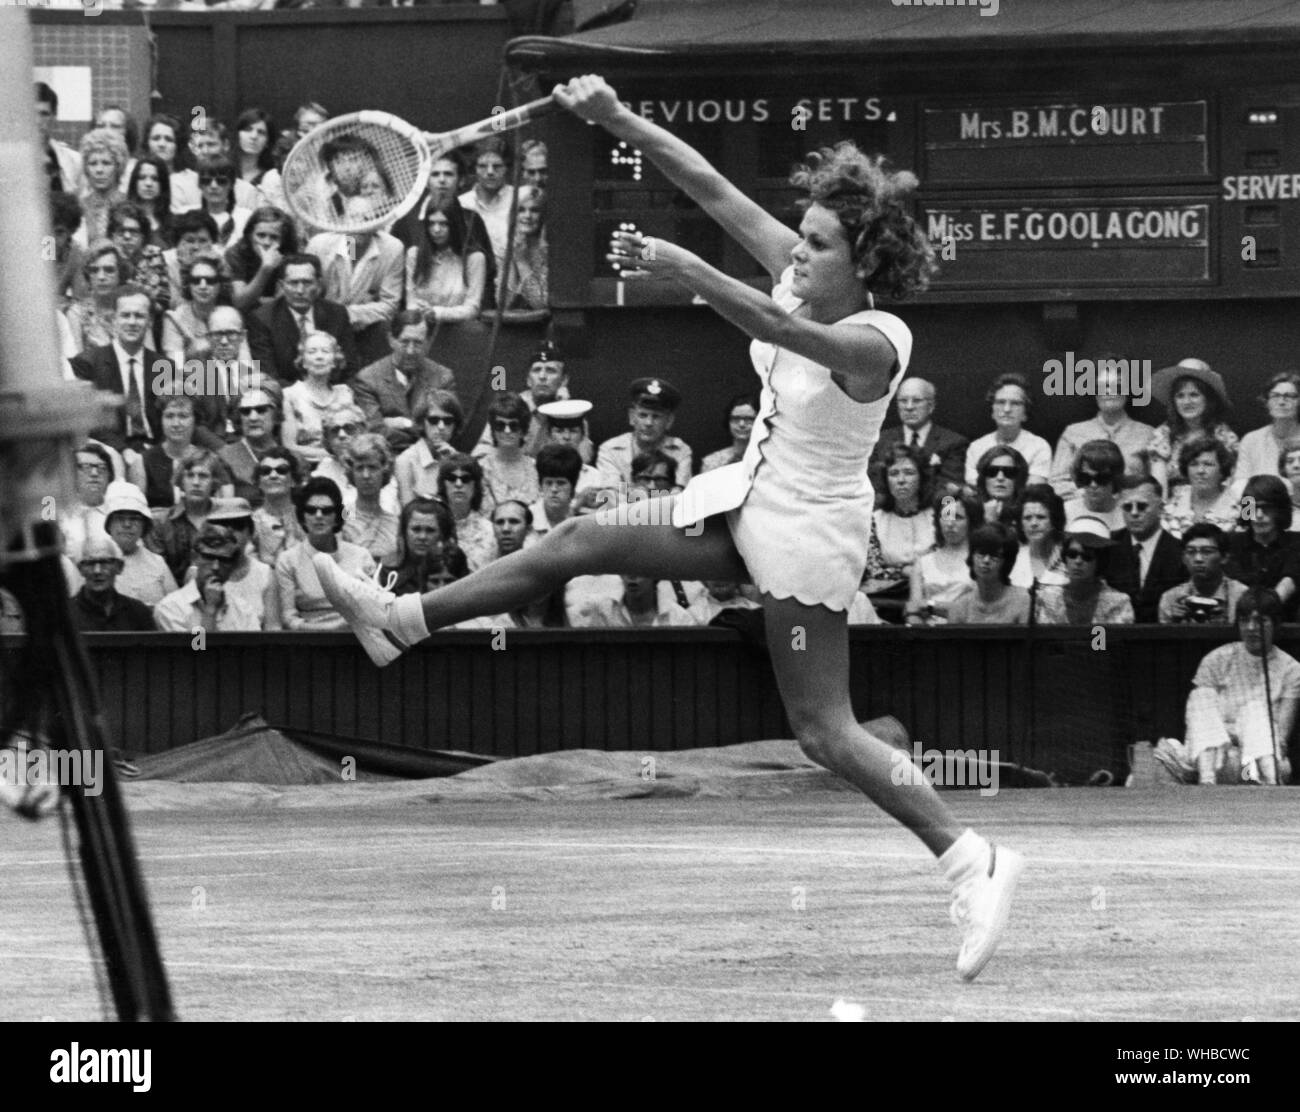 Wimbledon 1971 - Evon Goolagong (Australie) (vu ici) c. Margaret Court (Australie) le 2 juillet 1971.. Fay Evonne Goolagong Cawley AO MBE (né le 31 juillet 1951, dans Griffith, New South Wales, Australie) a été l'un des plus grands joueurs de tennis féminin dans les années 1970 et au début des années 1980. Elle a remporté 14 titres du Grand Chelem : sept en simple (quatre Open d'Australie, deux Wimbledon et un Open de France), six en double dames et un en double mixte.. Banque D'Images